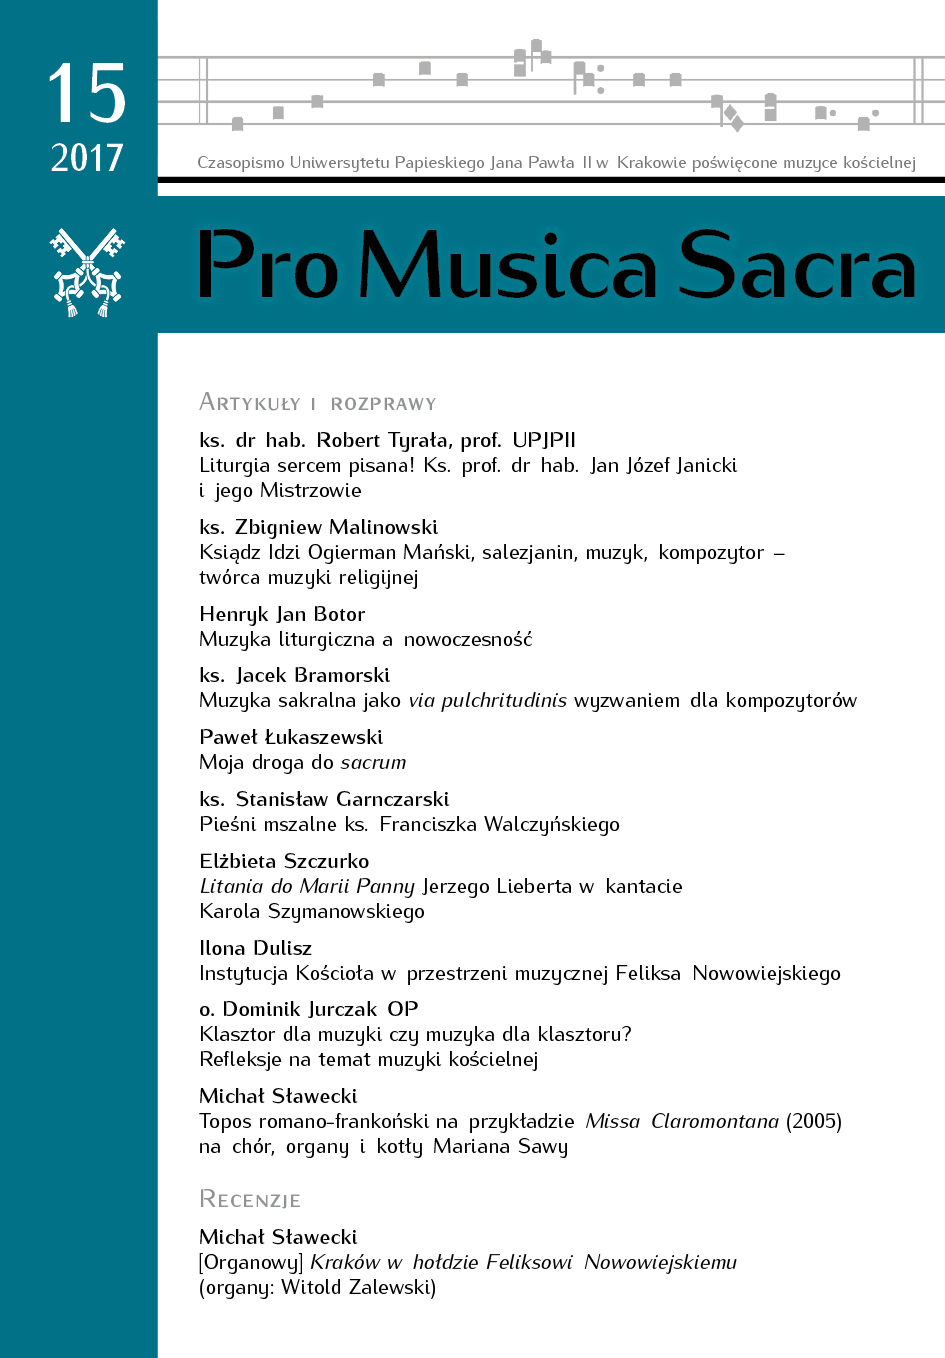 Muzyka sakralna jako via pulchritudinis wyzwaniem dla kompozytorów